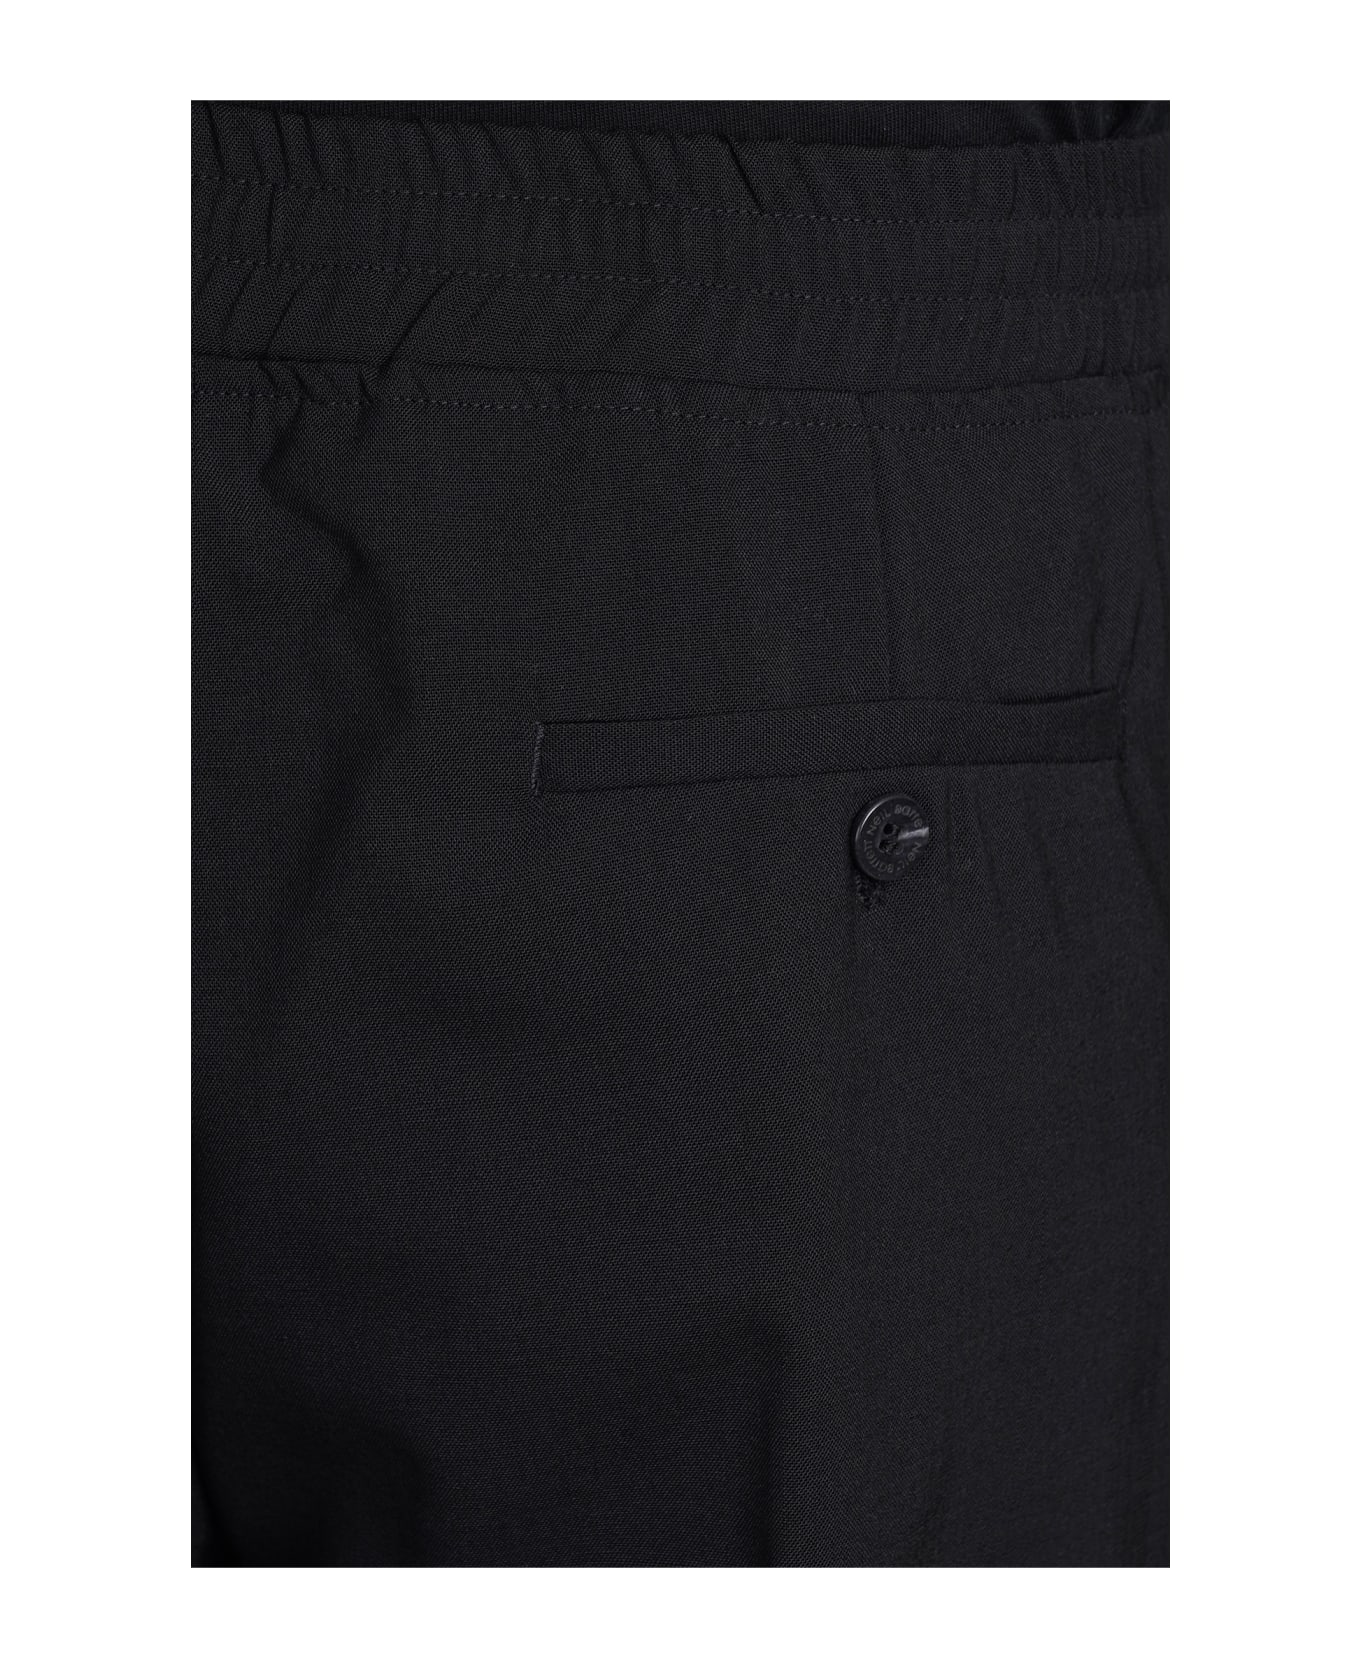 Neil Barrett Pants In Black Polyester - black